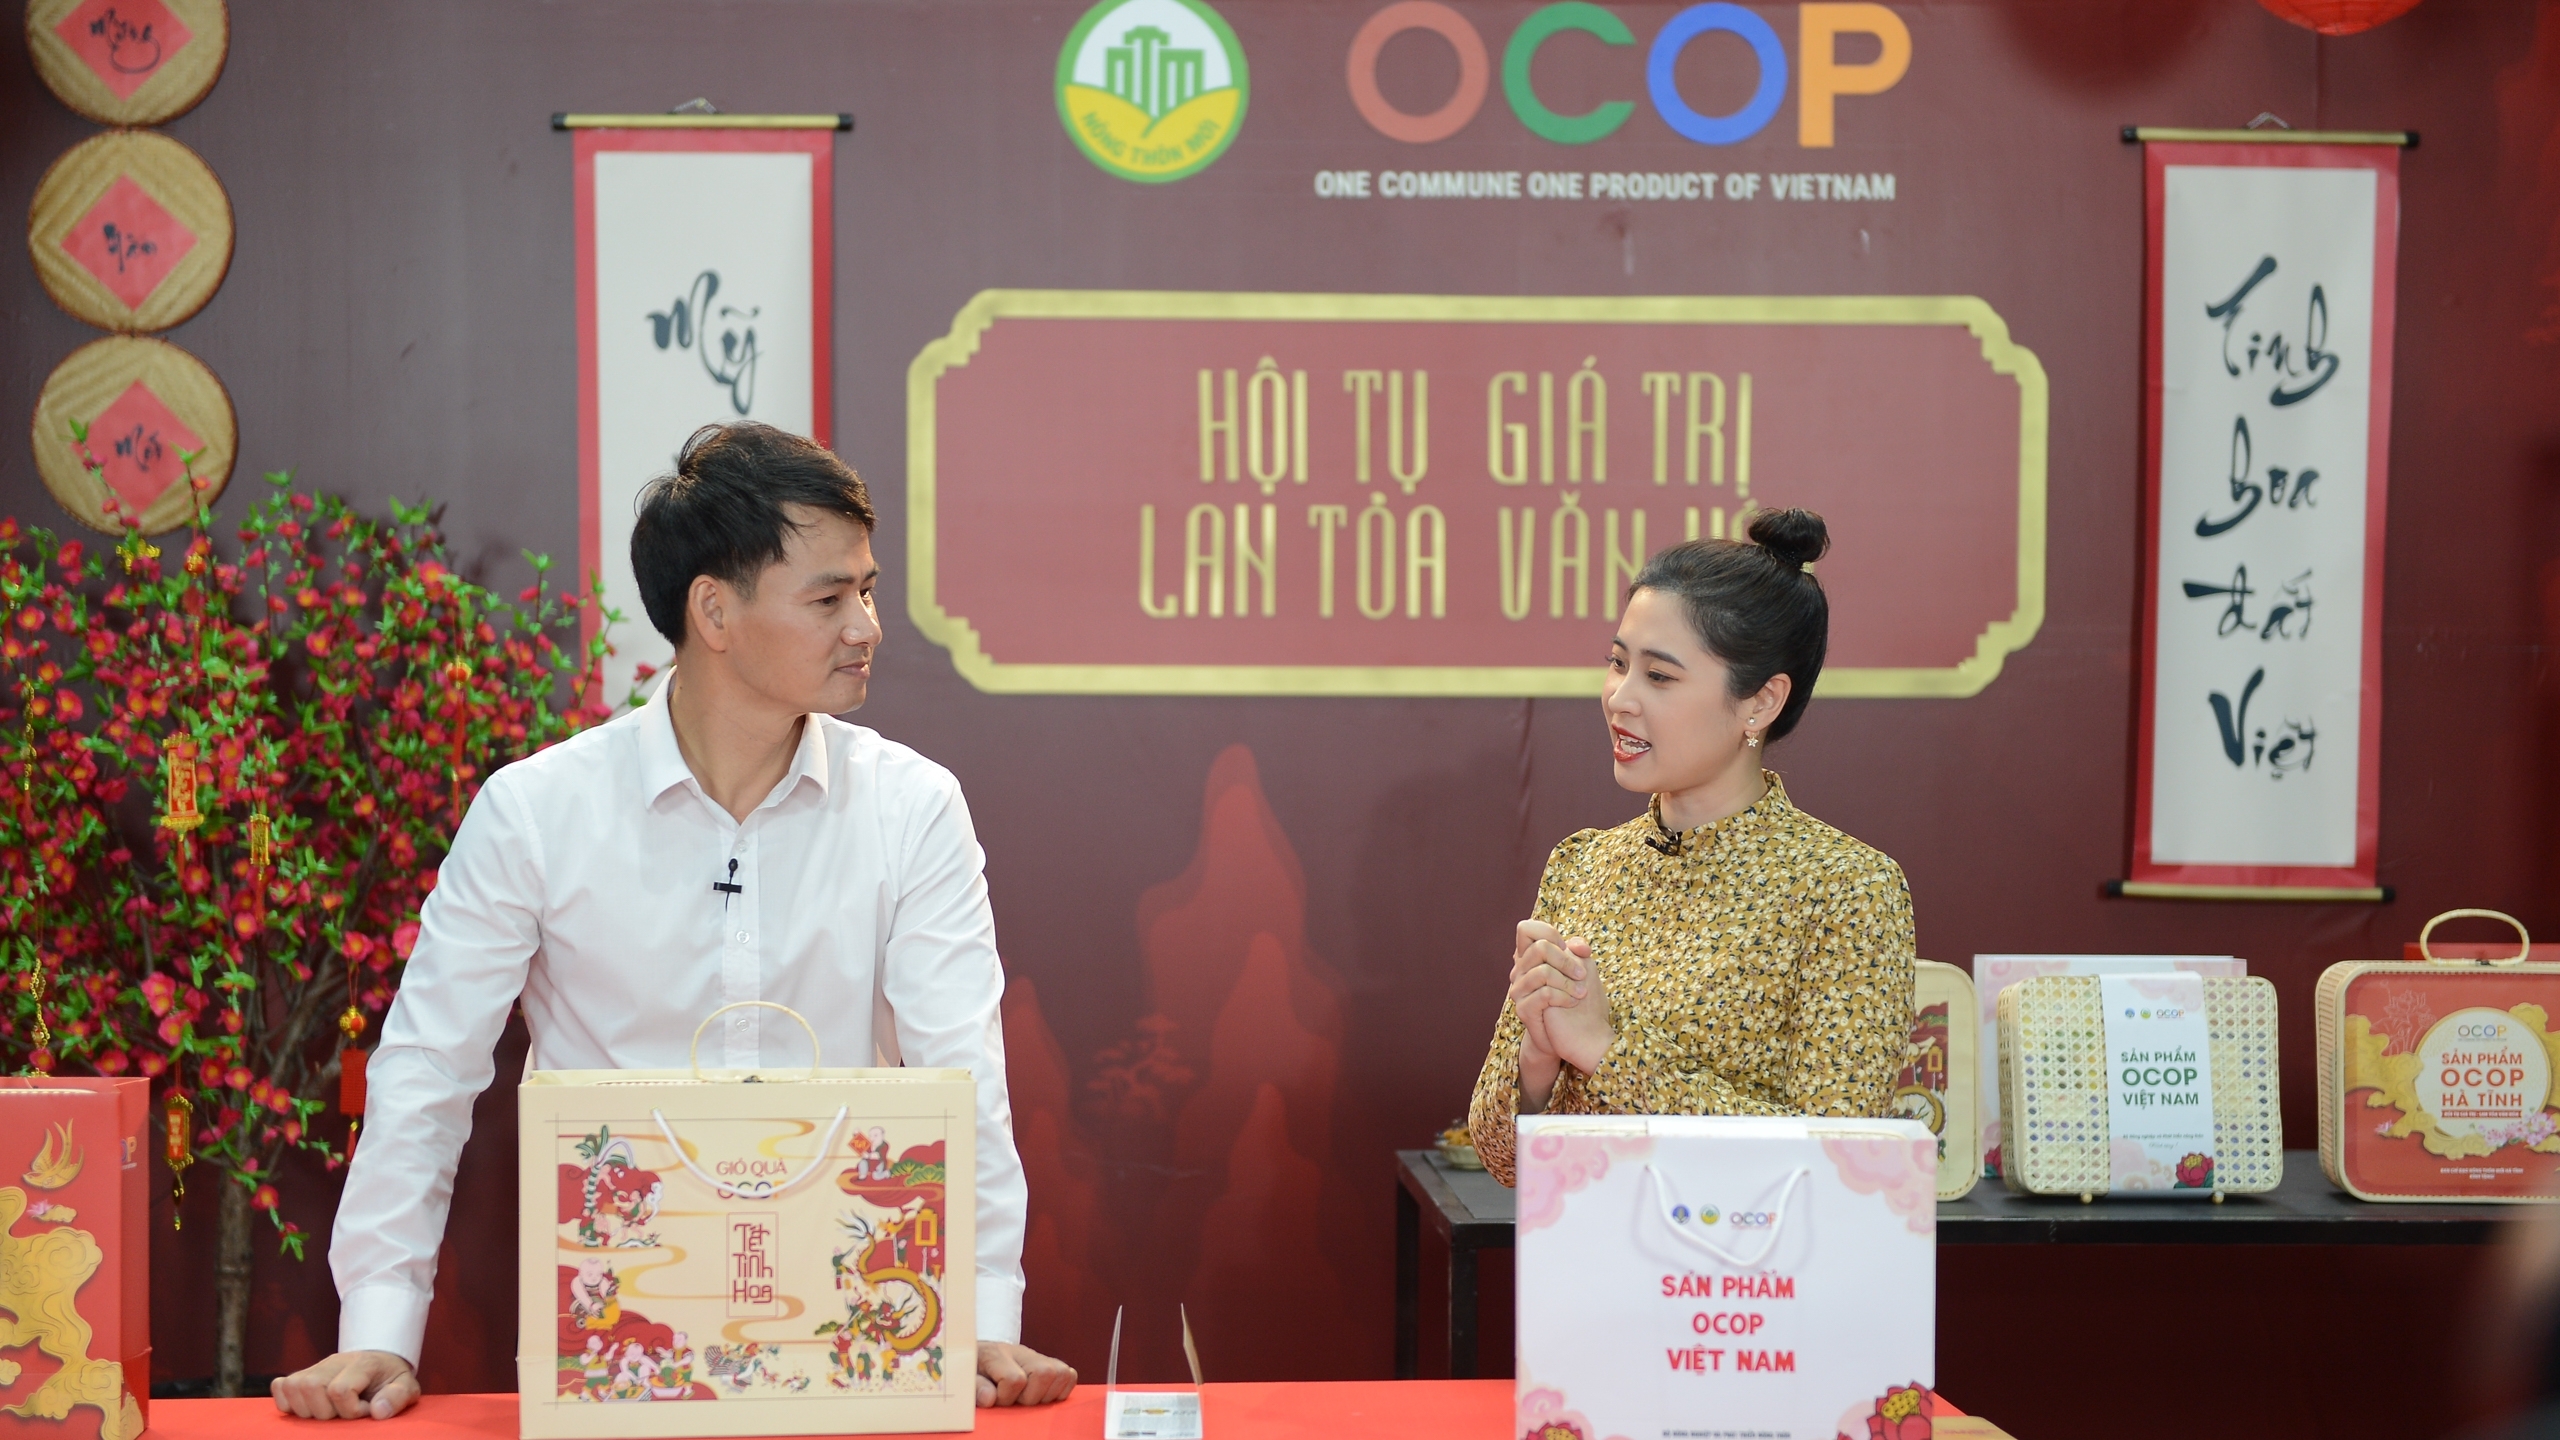 Nghệ sỹ Xuân Bắc livestream chốt đơn bán hàng sản phẩm OCOP 3 miền dịp Tết